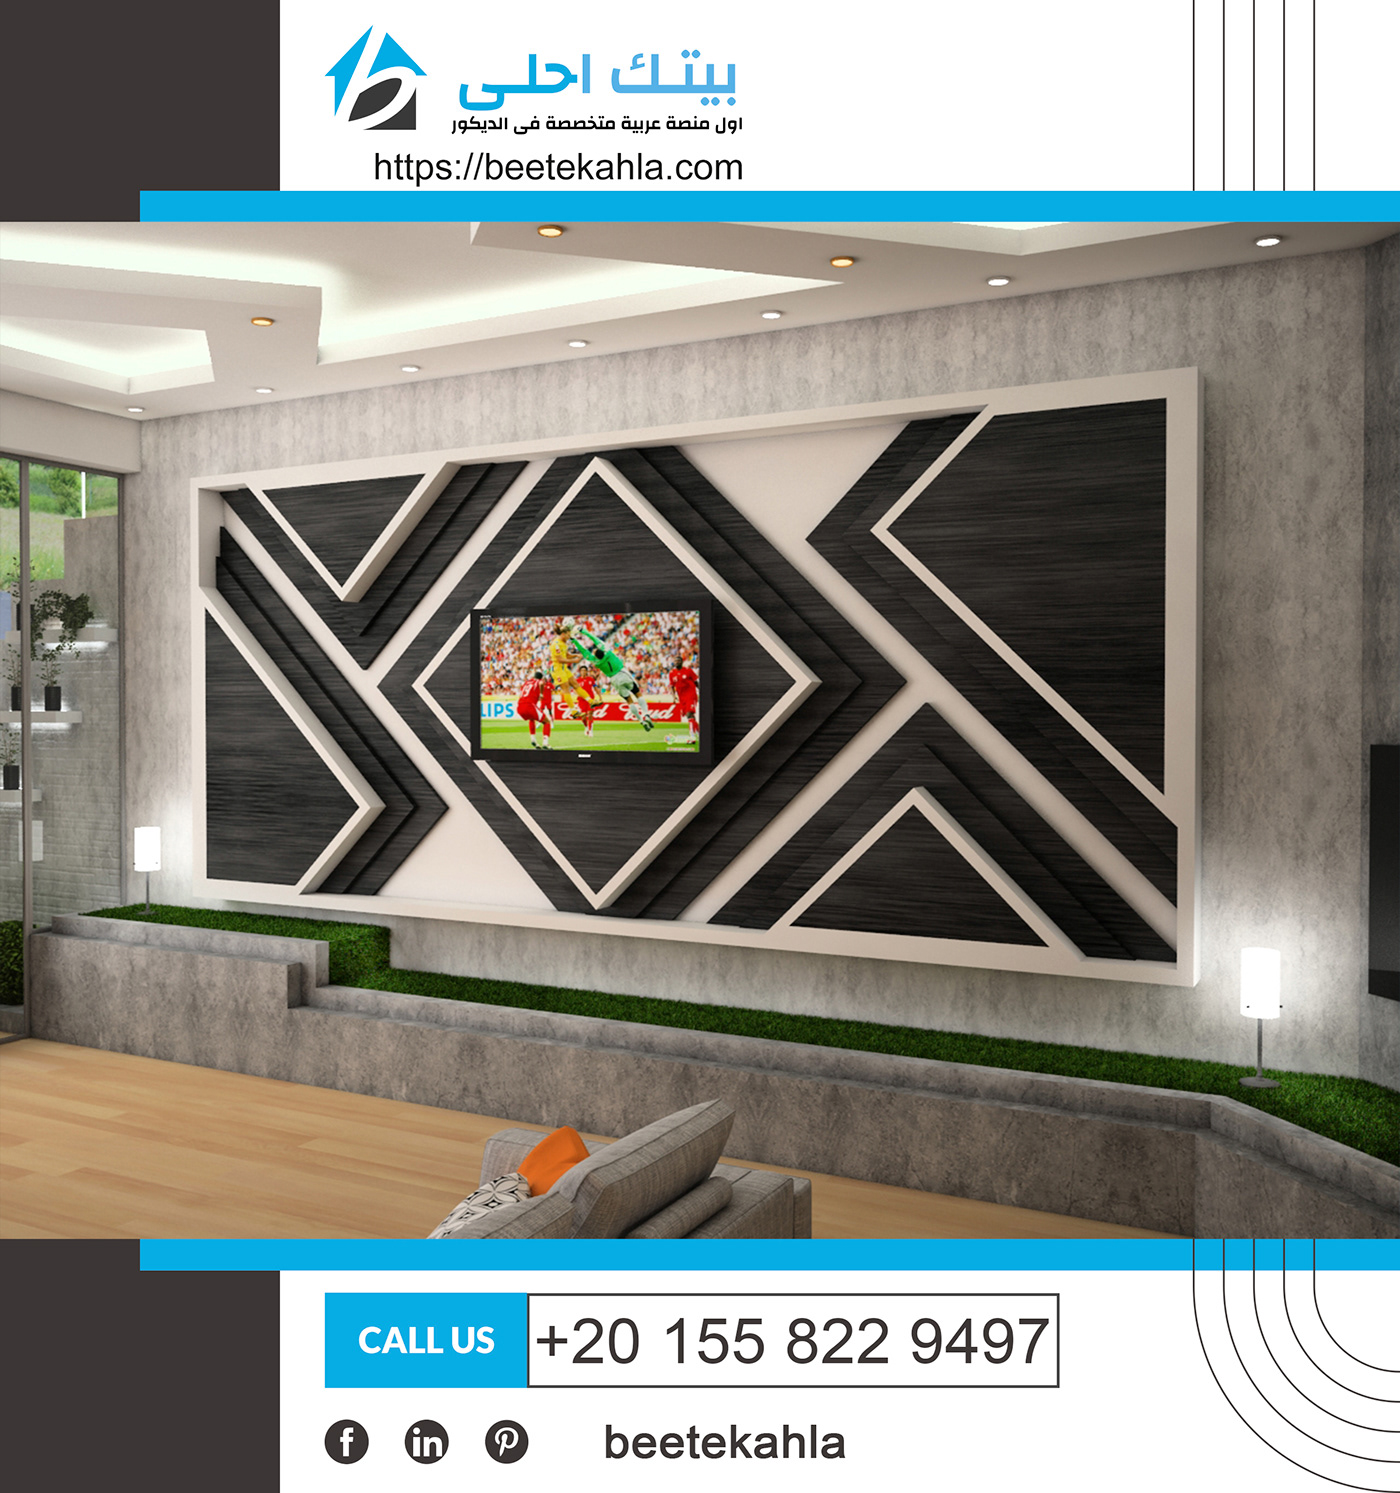 3ds max 3dsmax modern interior modern interior design Space Planning architectural design visualization Interior Designing